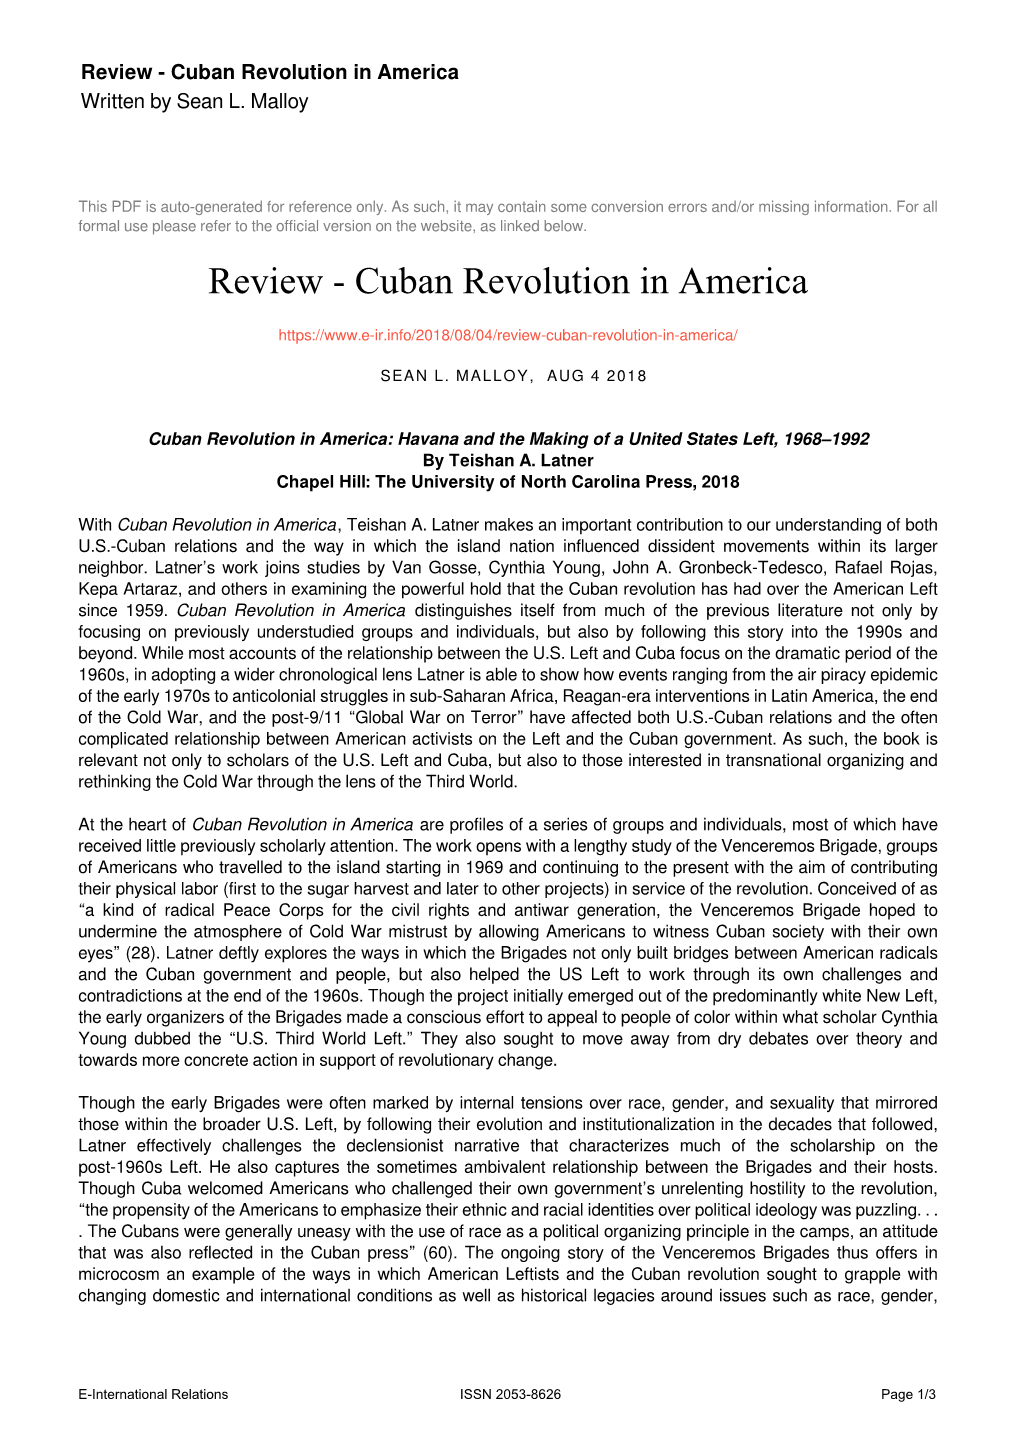 Cuban Revolution in America Written by Sean L